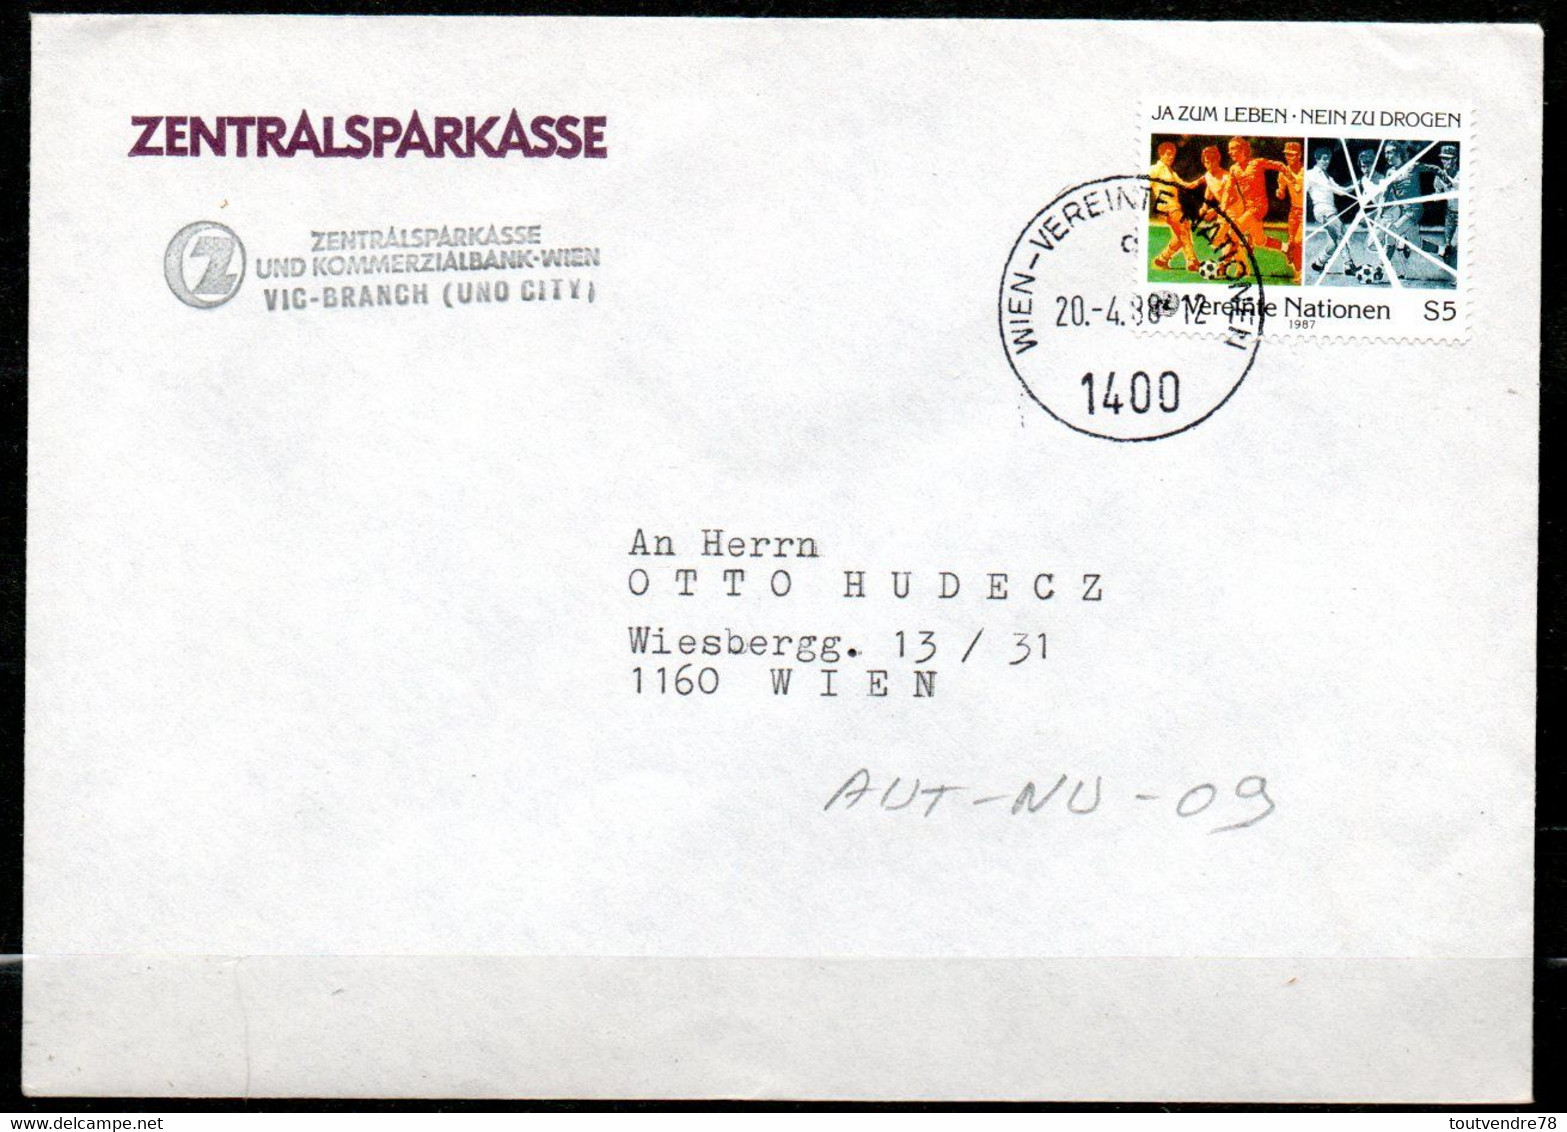 AUT-NU-09 : Autriche NU 1988 / Drogue Dans Le Sport / Banque Centrale D'épargne - Briefe U. Dokumente